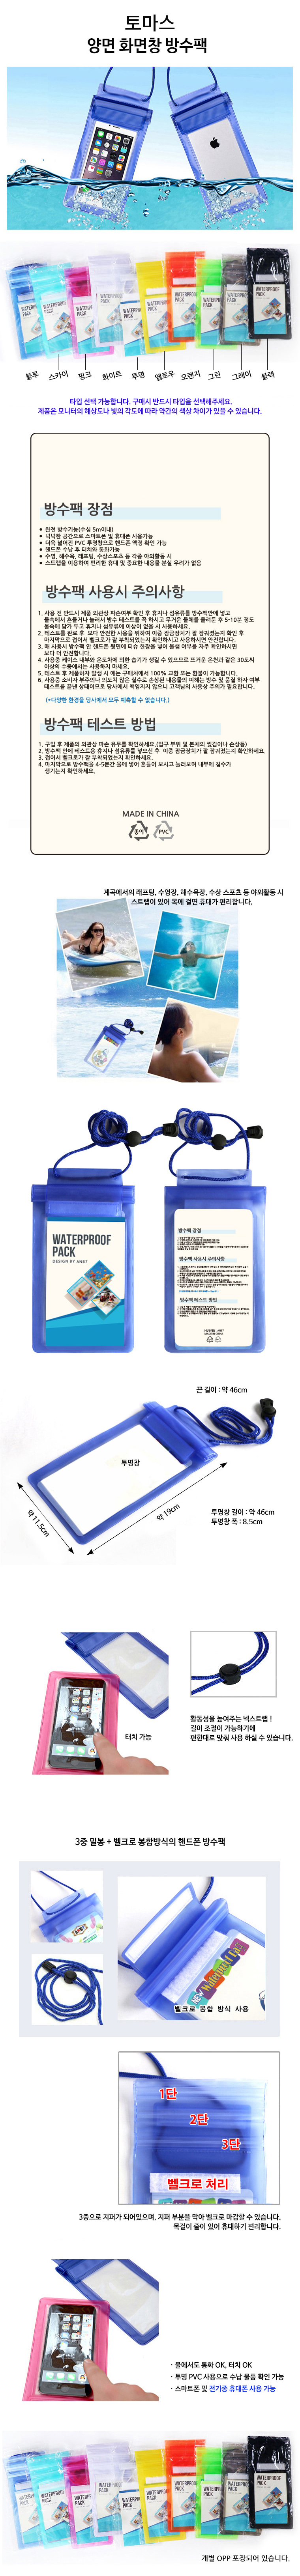 new_waterproof_bag_2018-.jpg